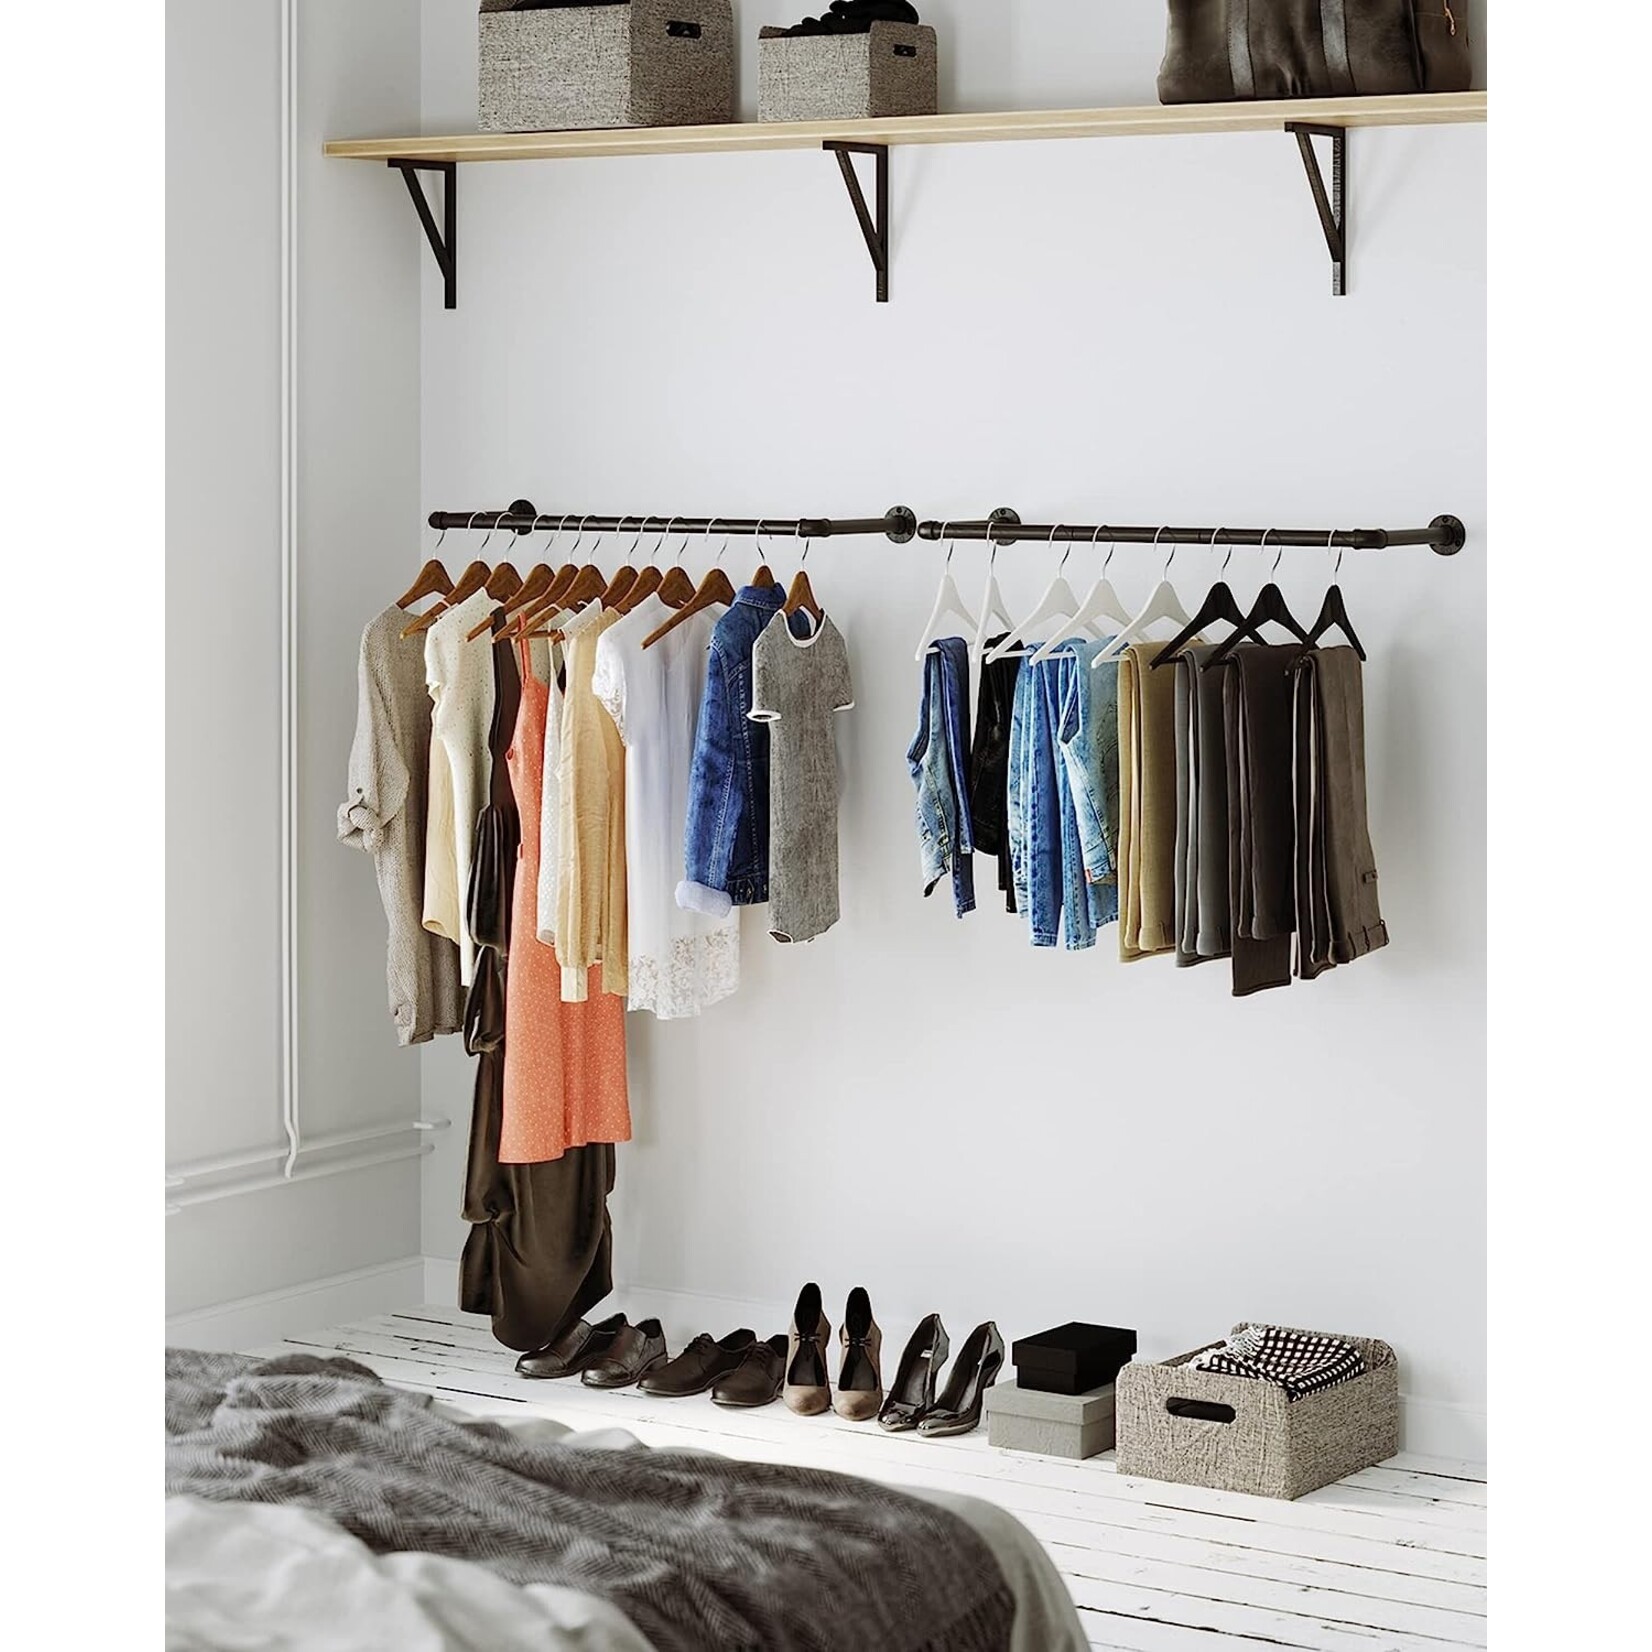 Bobbel Home Bobbel Home - Industrial clothes rack - max load 50 kg - Black